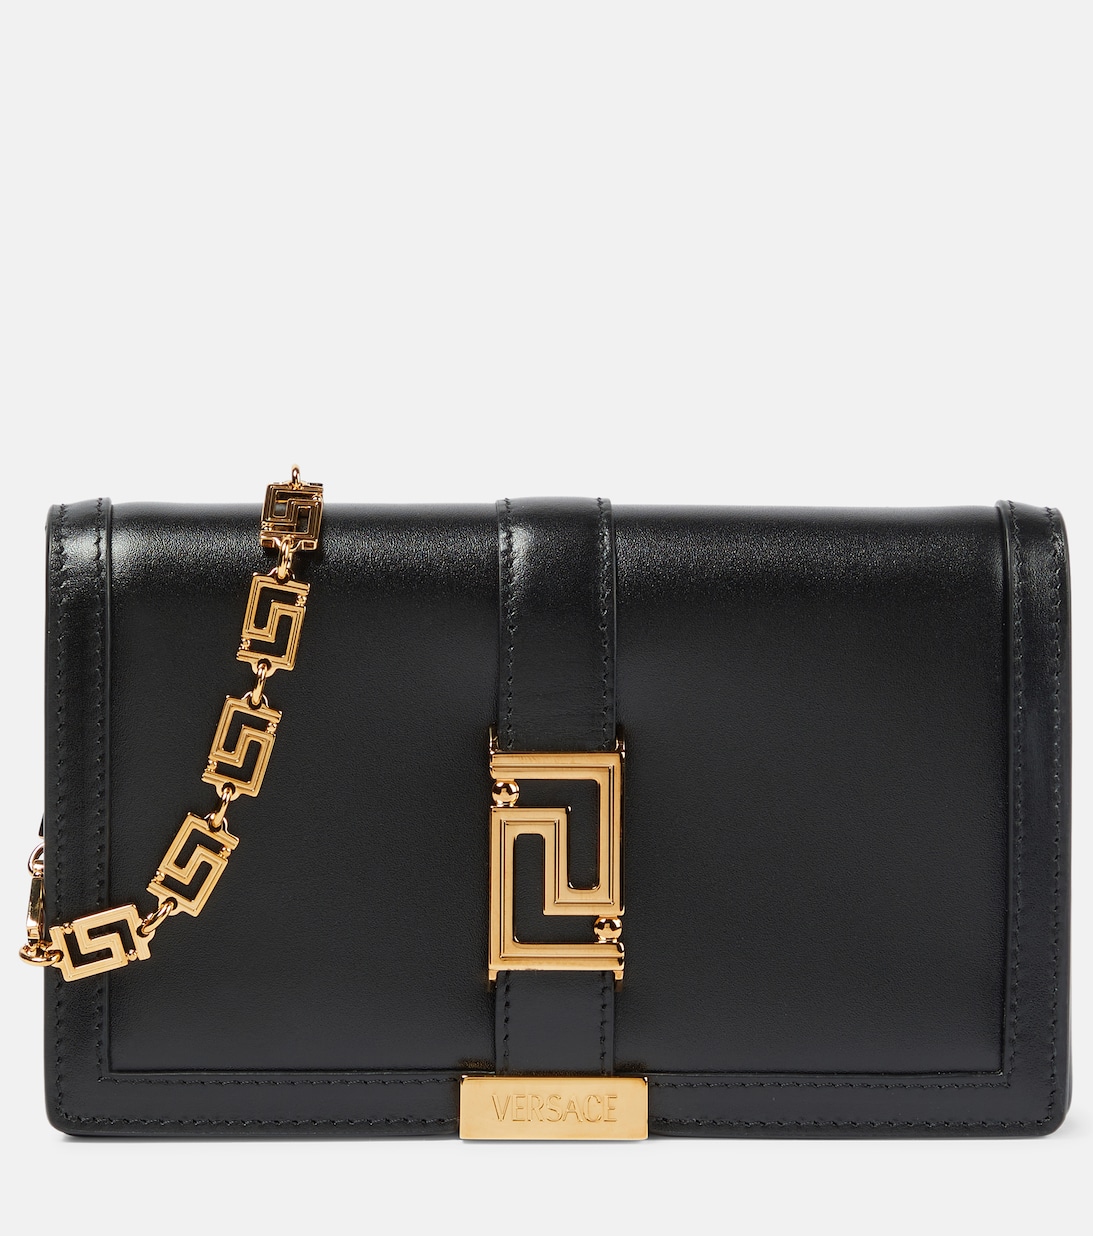 Кожаная сумка через плечо Greca Goddess Versace, черный мини сумка greca goddess versace цвет pink